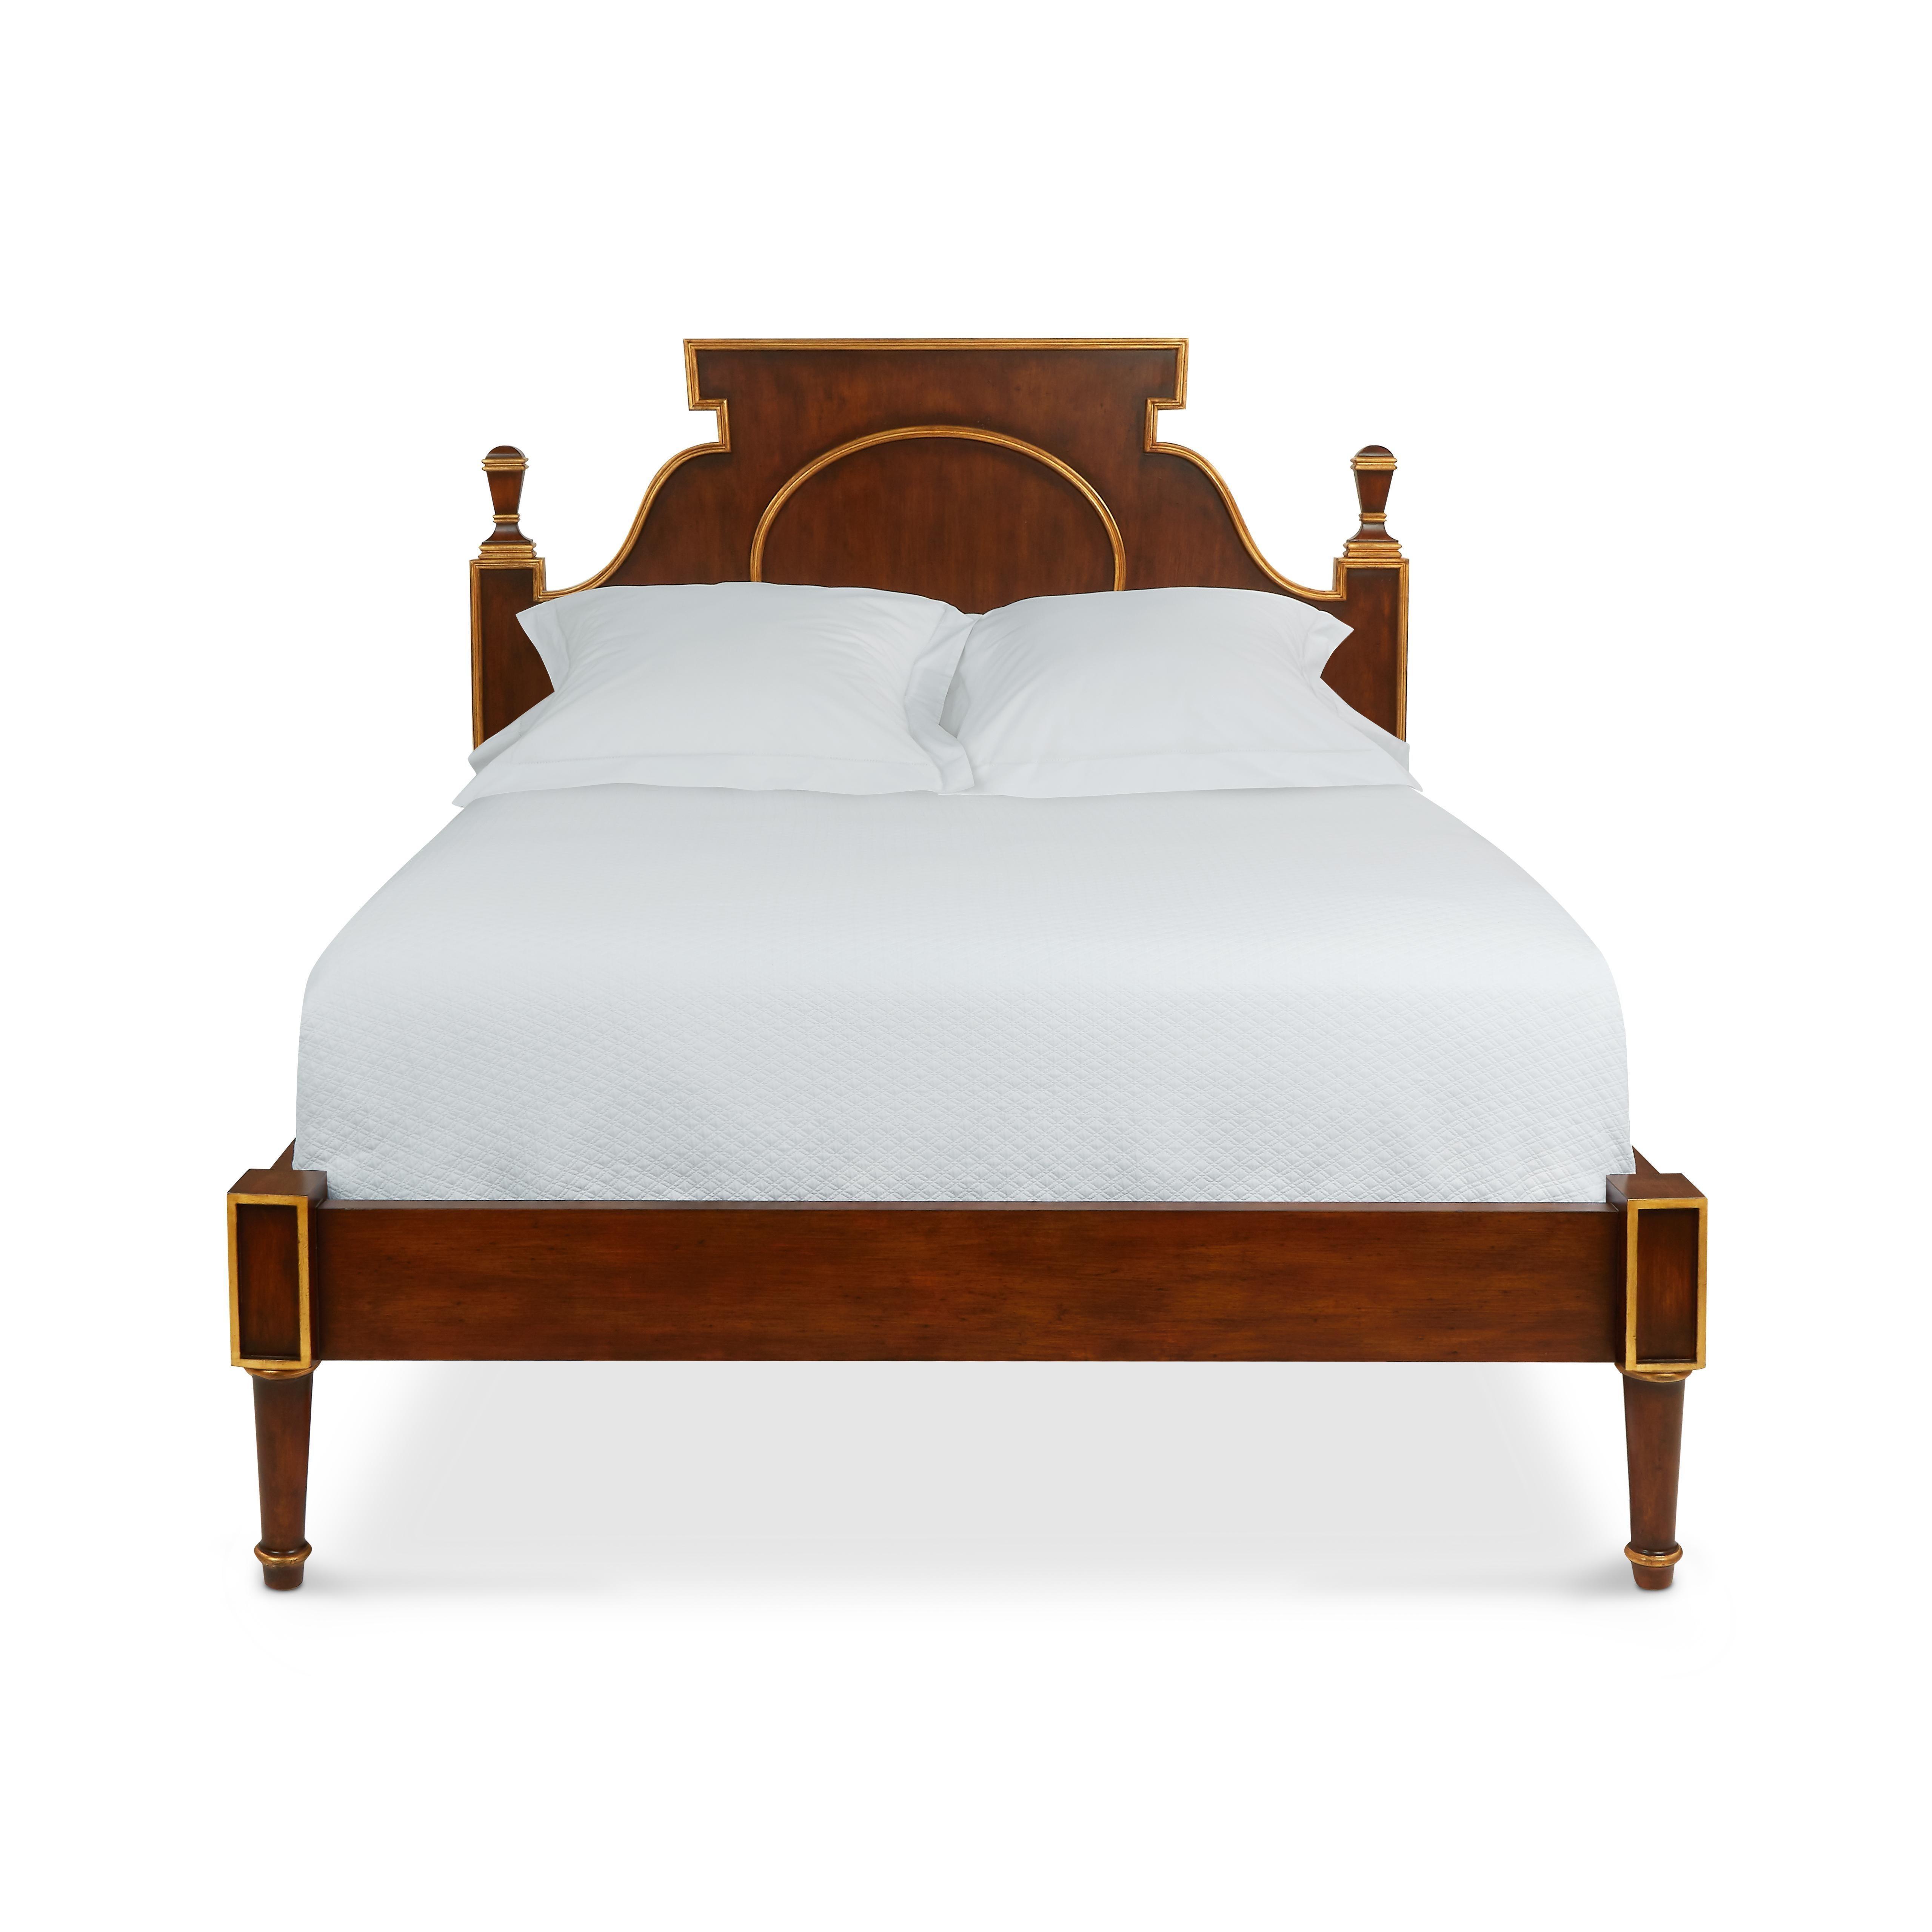 Italienische antike Betten aus dem neunzehnten Jahrhundert waren die Inspiration für unser Bett Lucia, das sich durch eine wunderschöne Lackierung in Walnussimitat auszeichnet. Goldverzierungen an den Rändern, einschließlich der Kopfteilabschlüsse